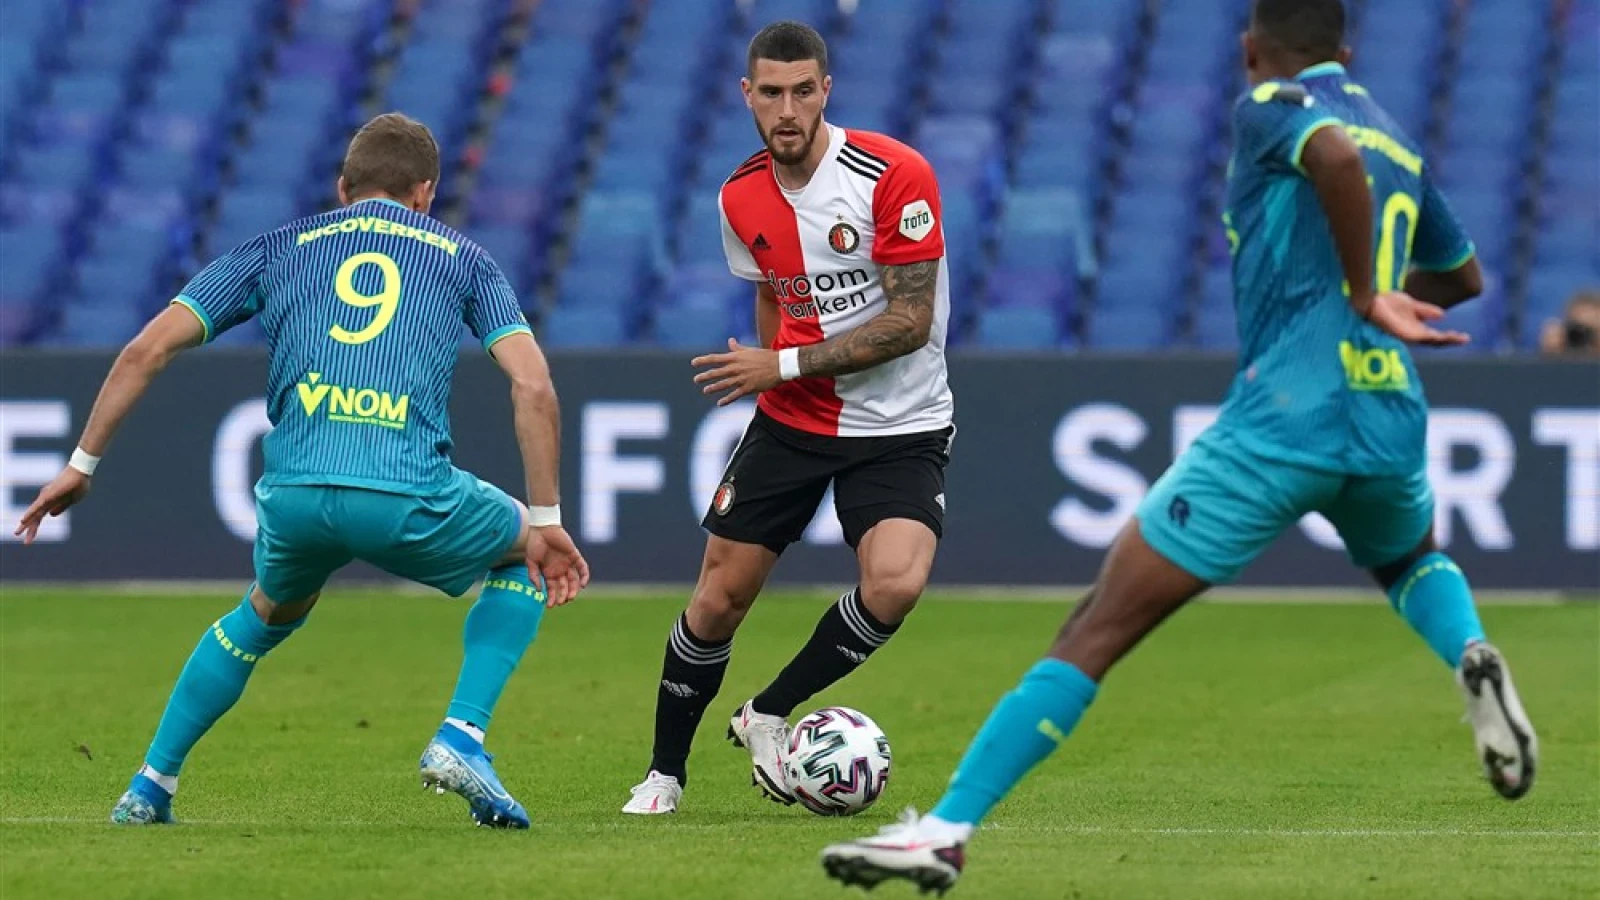 LIVE | Feyenoord - Sparta 1-1 | Einde wedstrijd